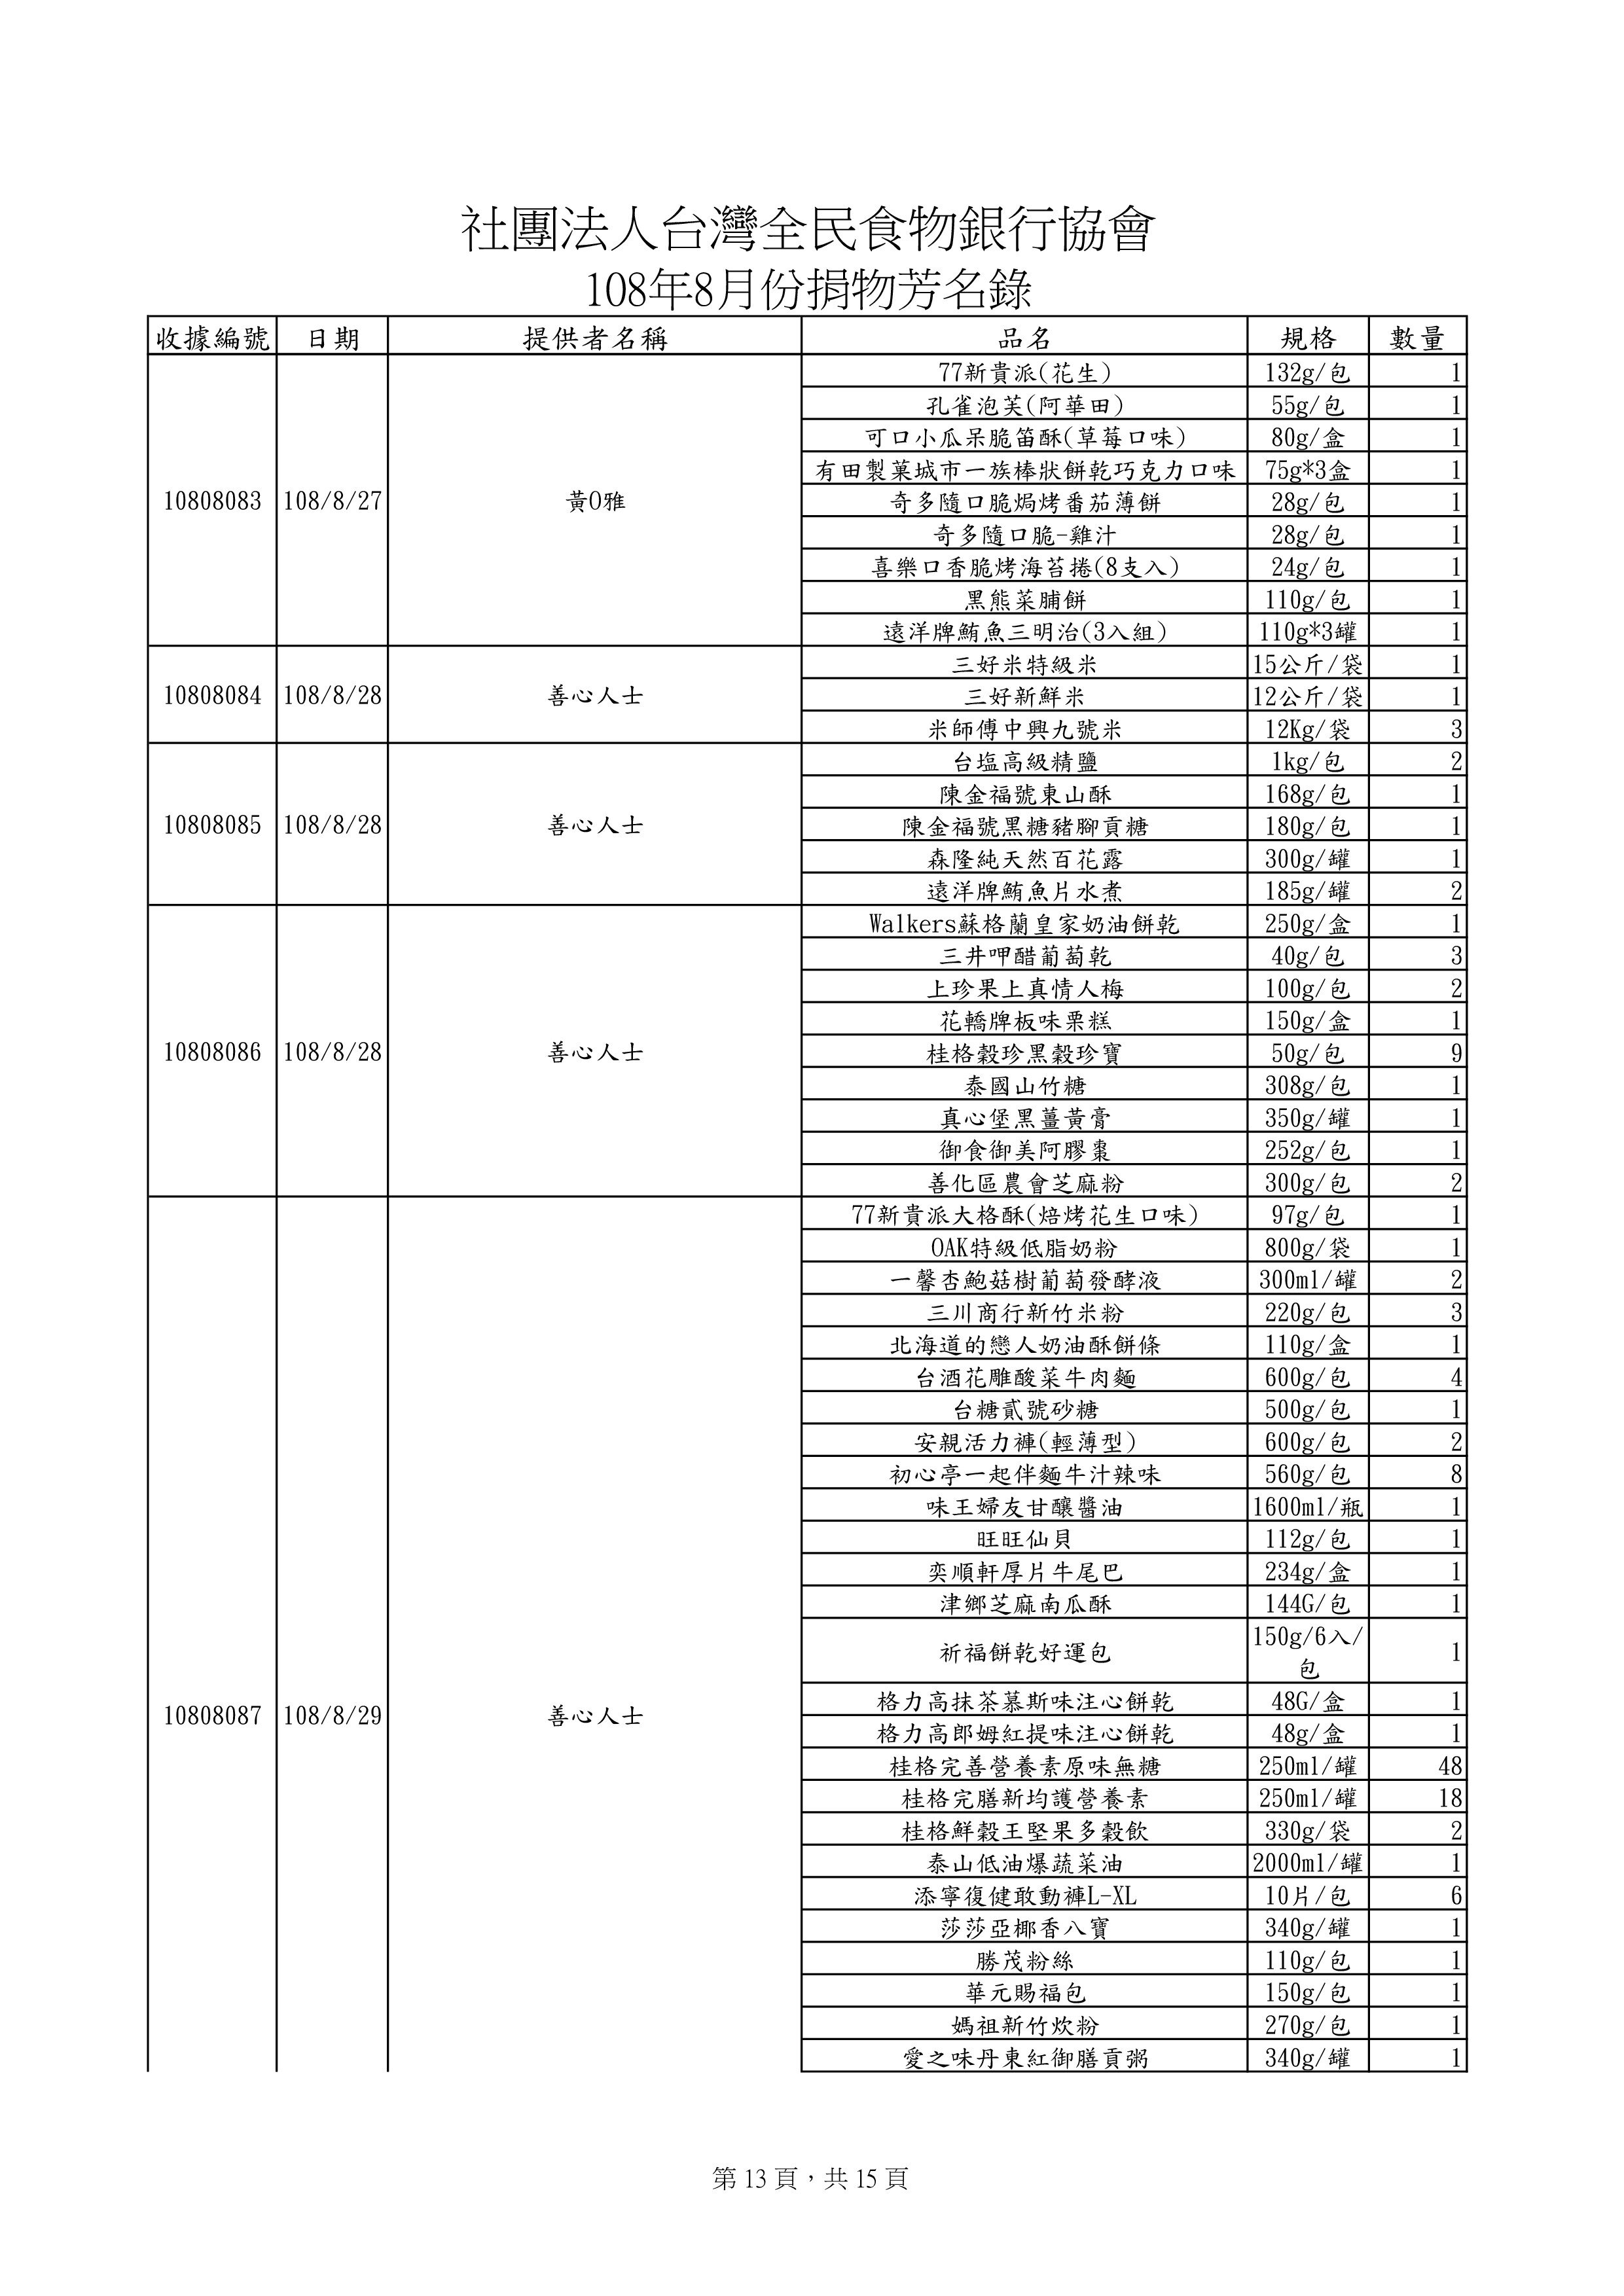 捐贈物品清單2019-8月份(系統報表)-12.jpg